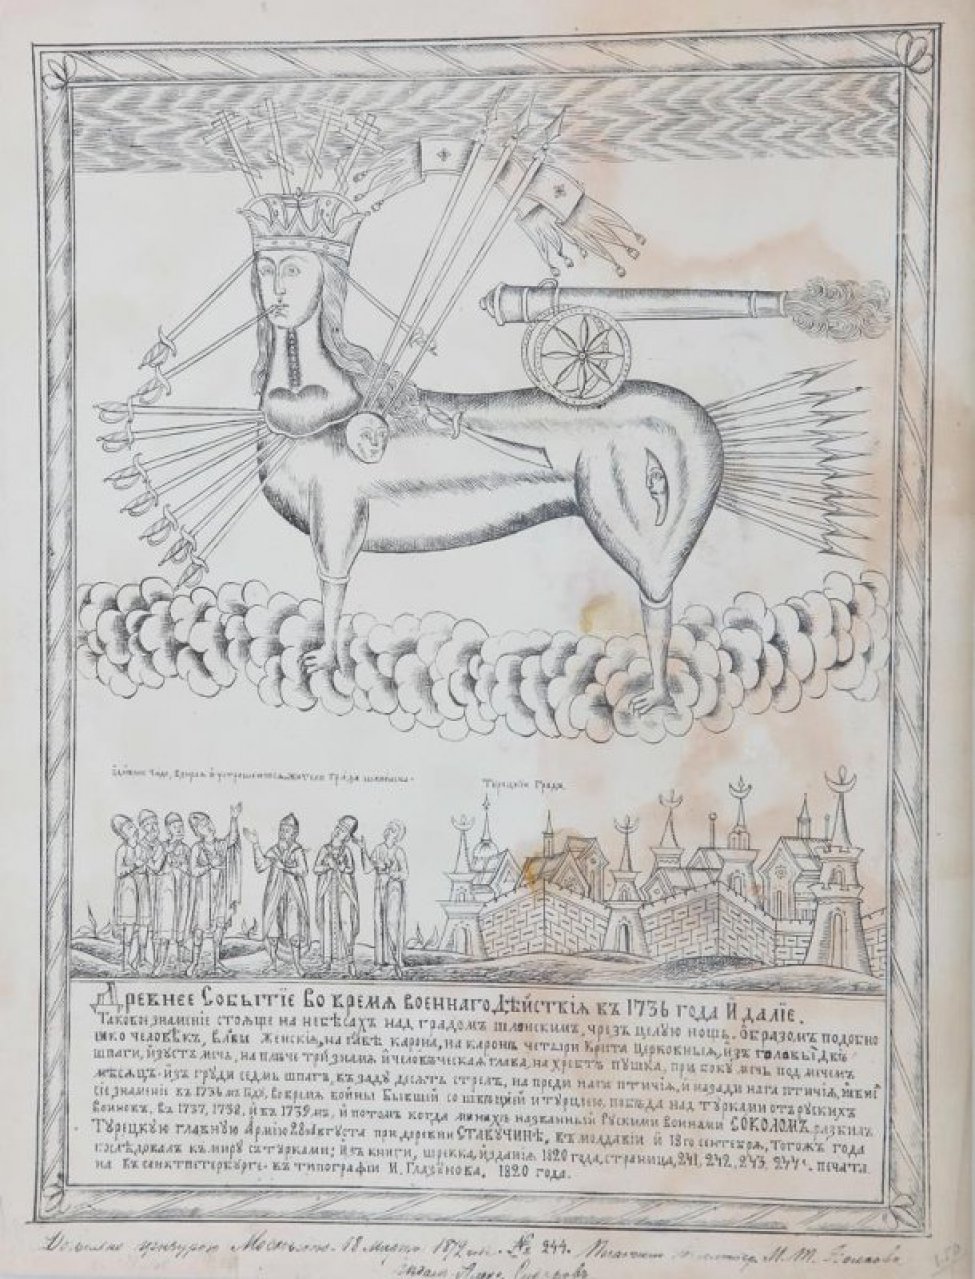 В верхней части композиции - стилизованное изображение зверя с женской головой в короне. Внизу - группа из семи человек и стилизованное изображение города. По изображением текст: "Древнее Событие".